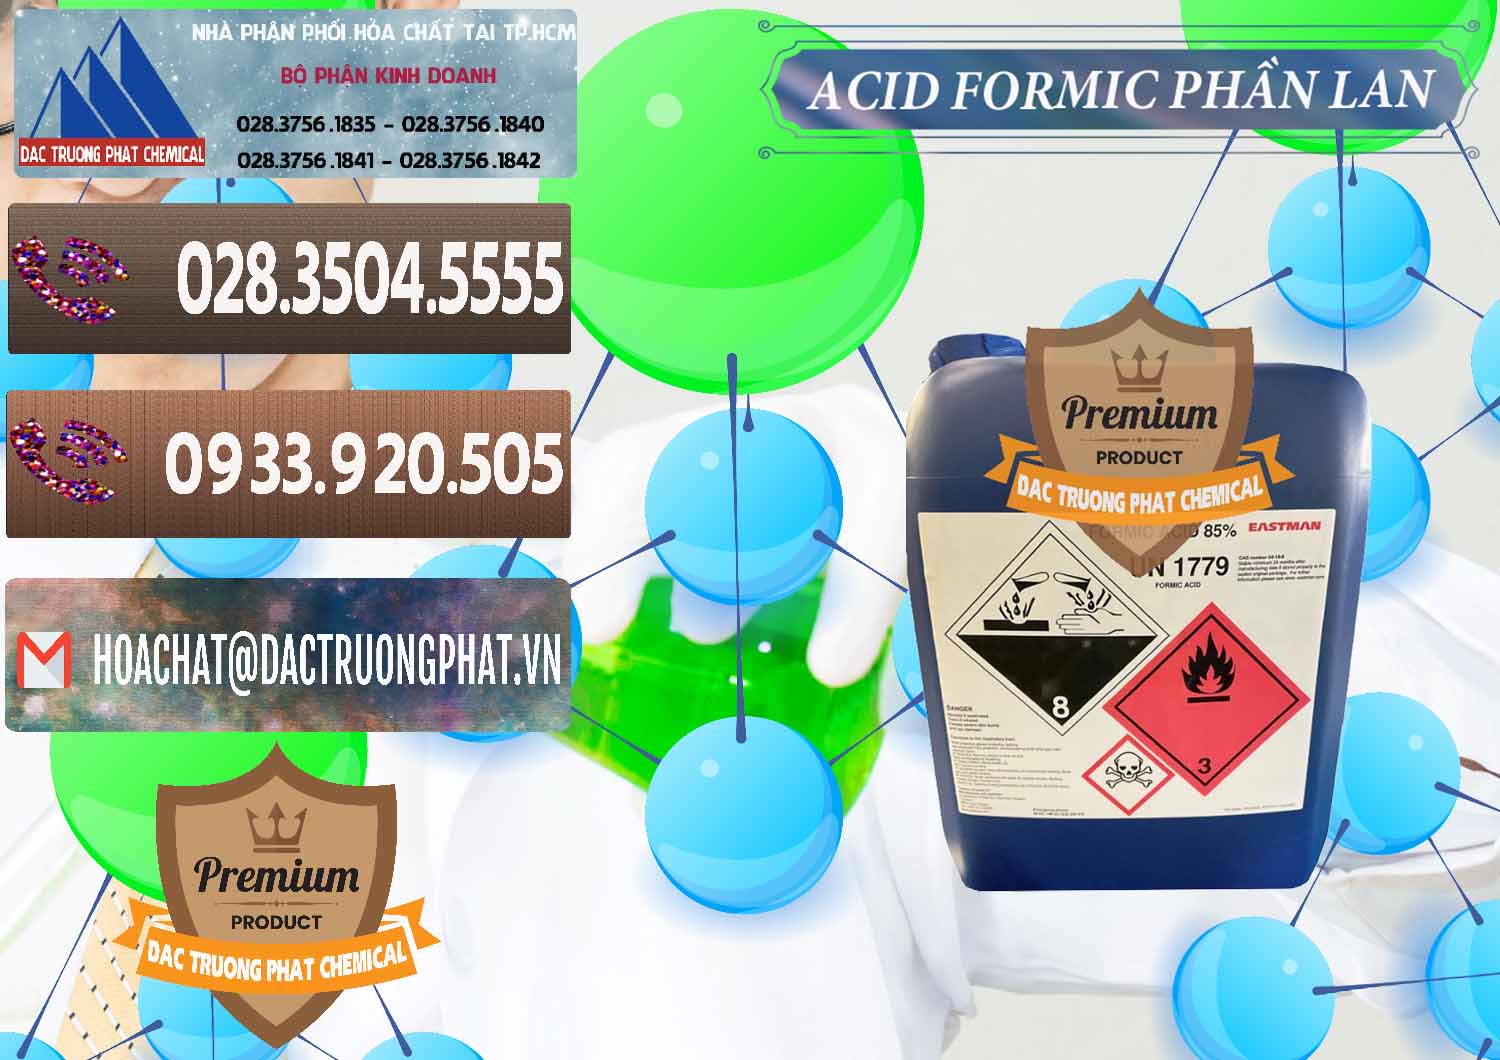 Nơi chuyên cung ứng - bán Acid Formic - Axit Formic Phần Lan Finland - 0376 - Công ty chuyên nhập khẩu - cung cấp hóa chất tại TP.HCM - hoachatviet.net